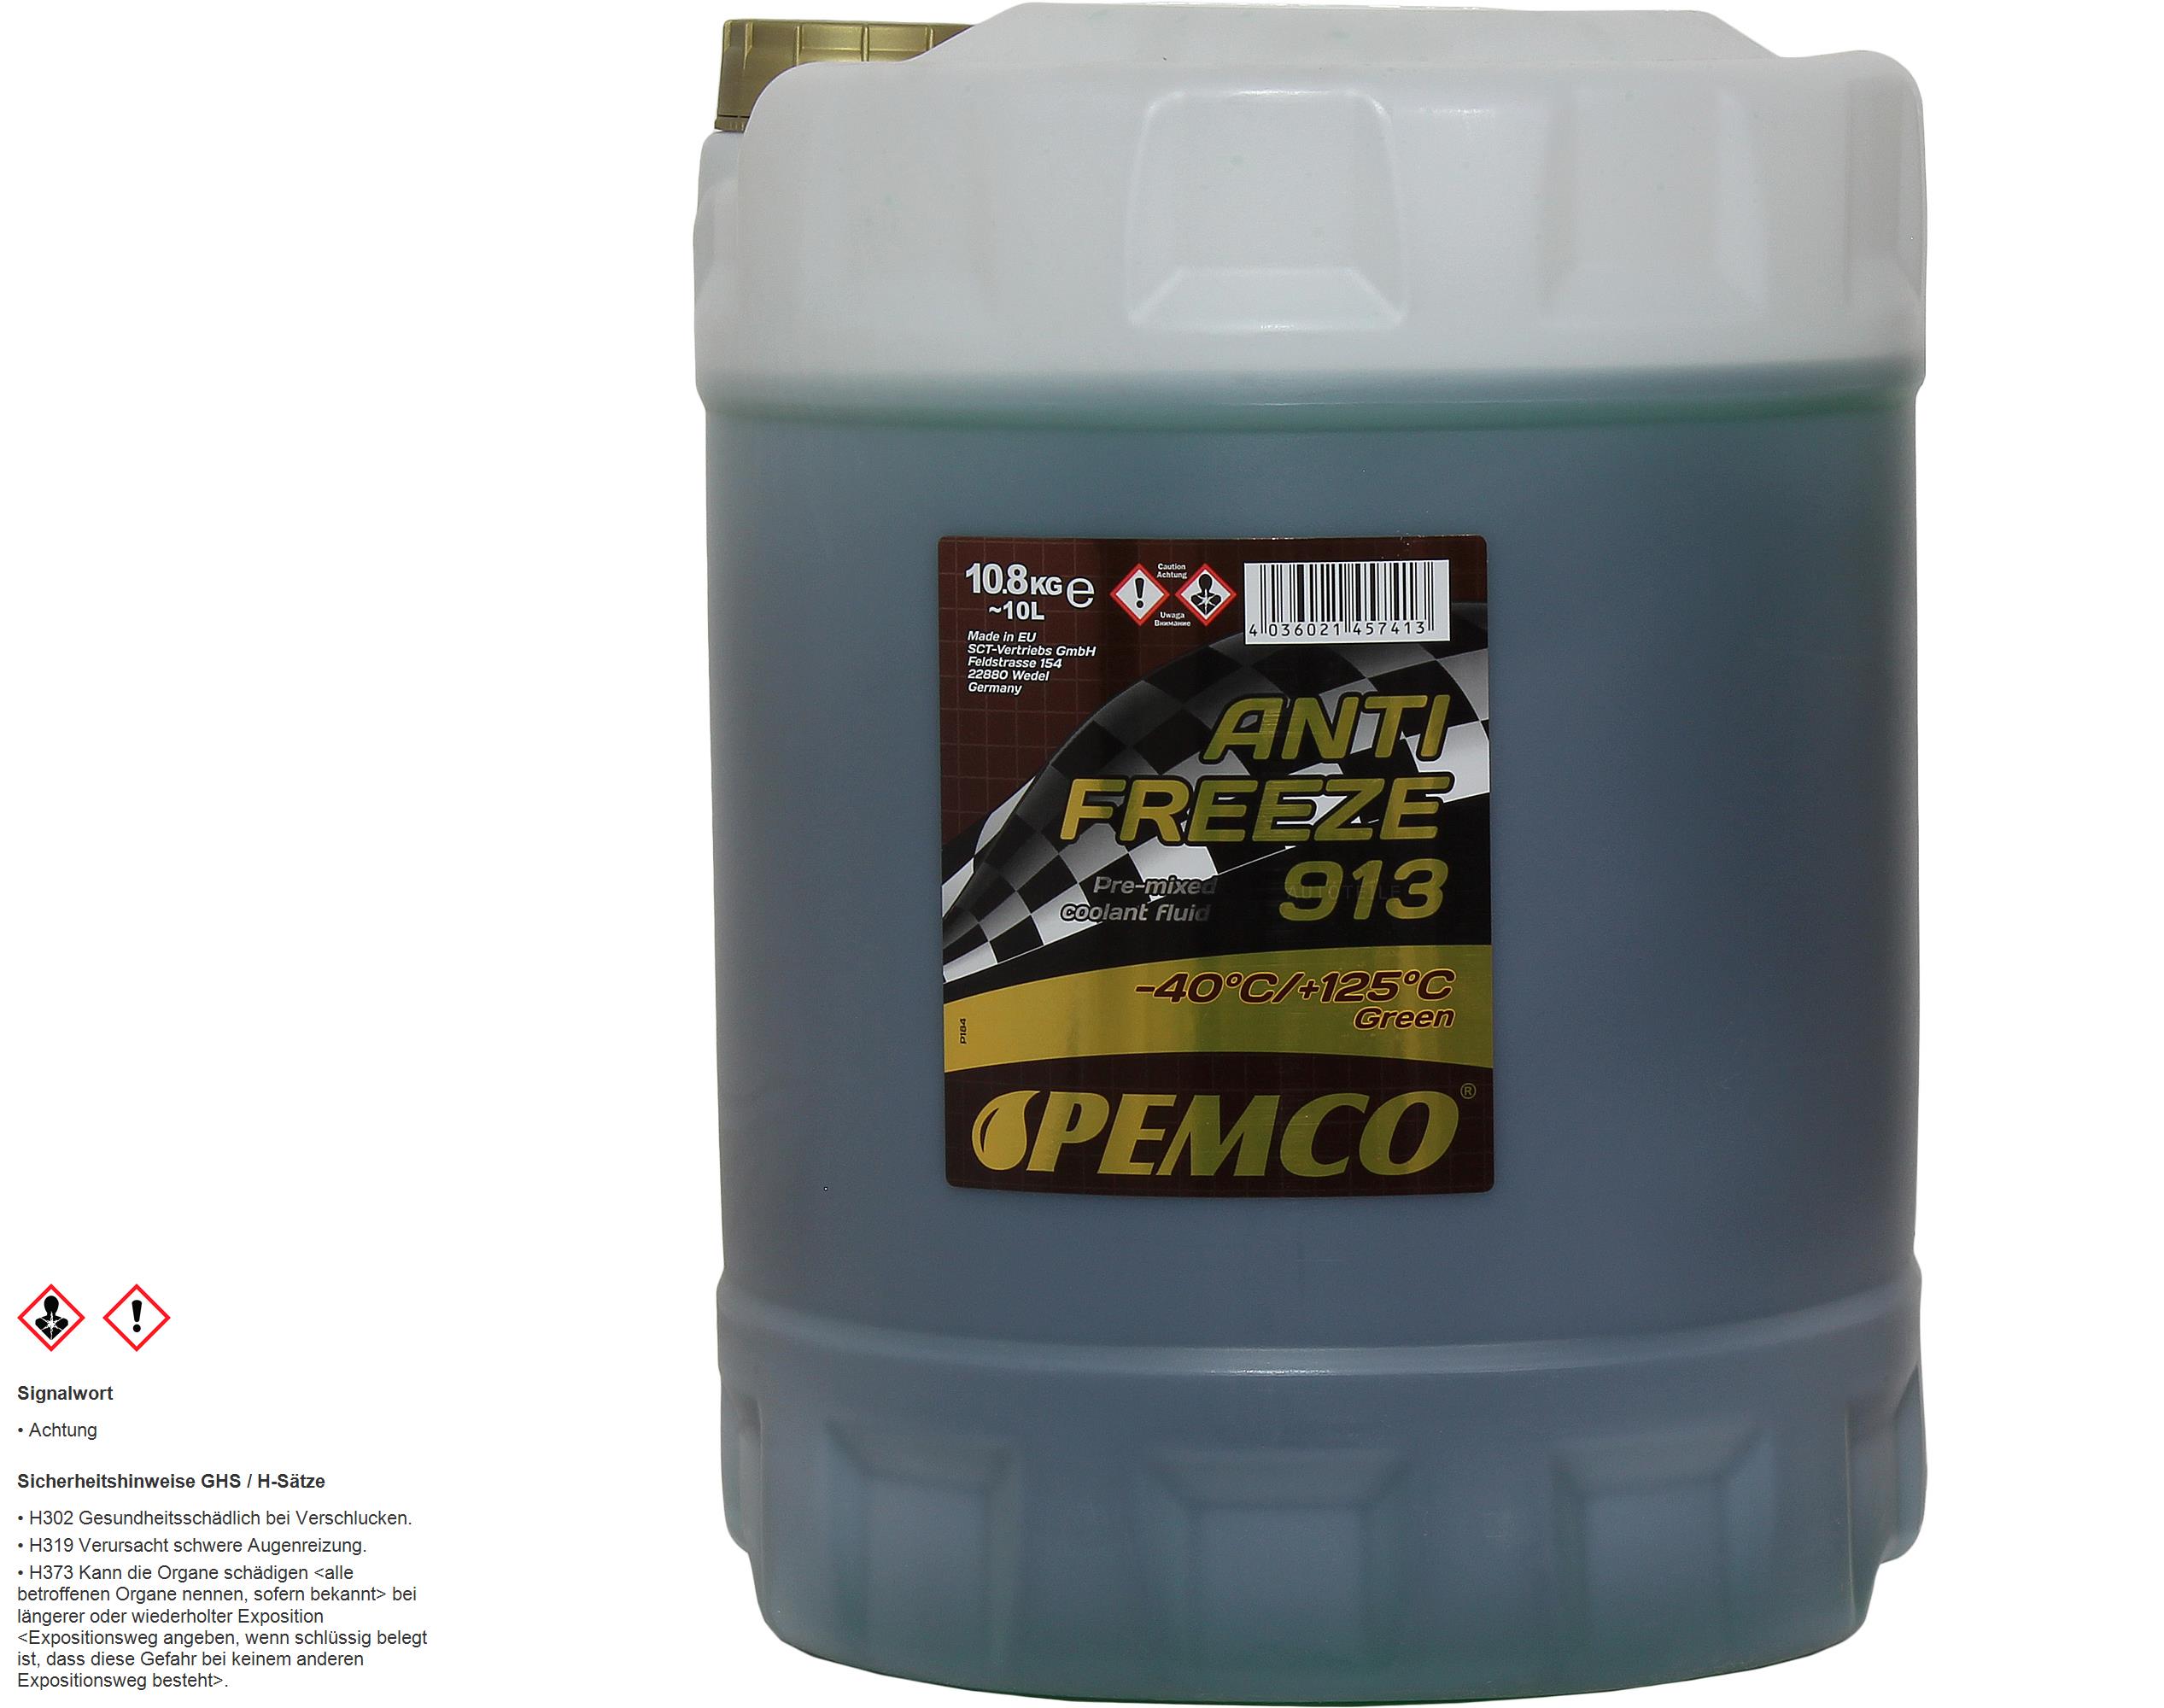  Pemco 1 x10 Liter Kühlerfrostschutz Antifreeze 913 grün green PM0913-10